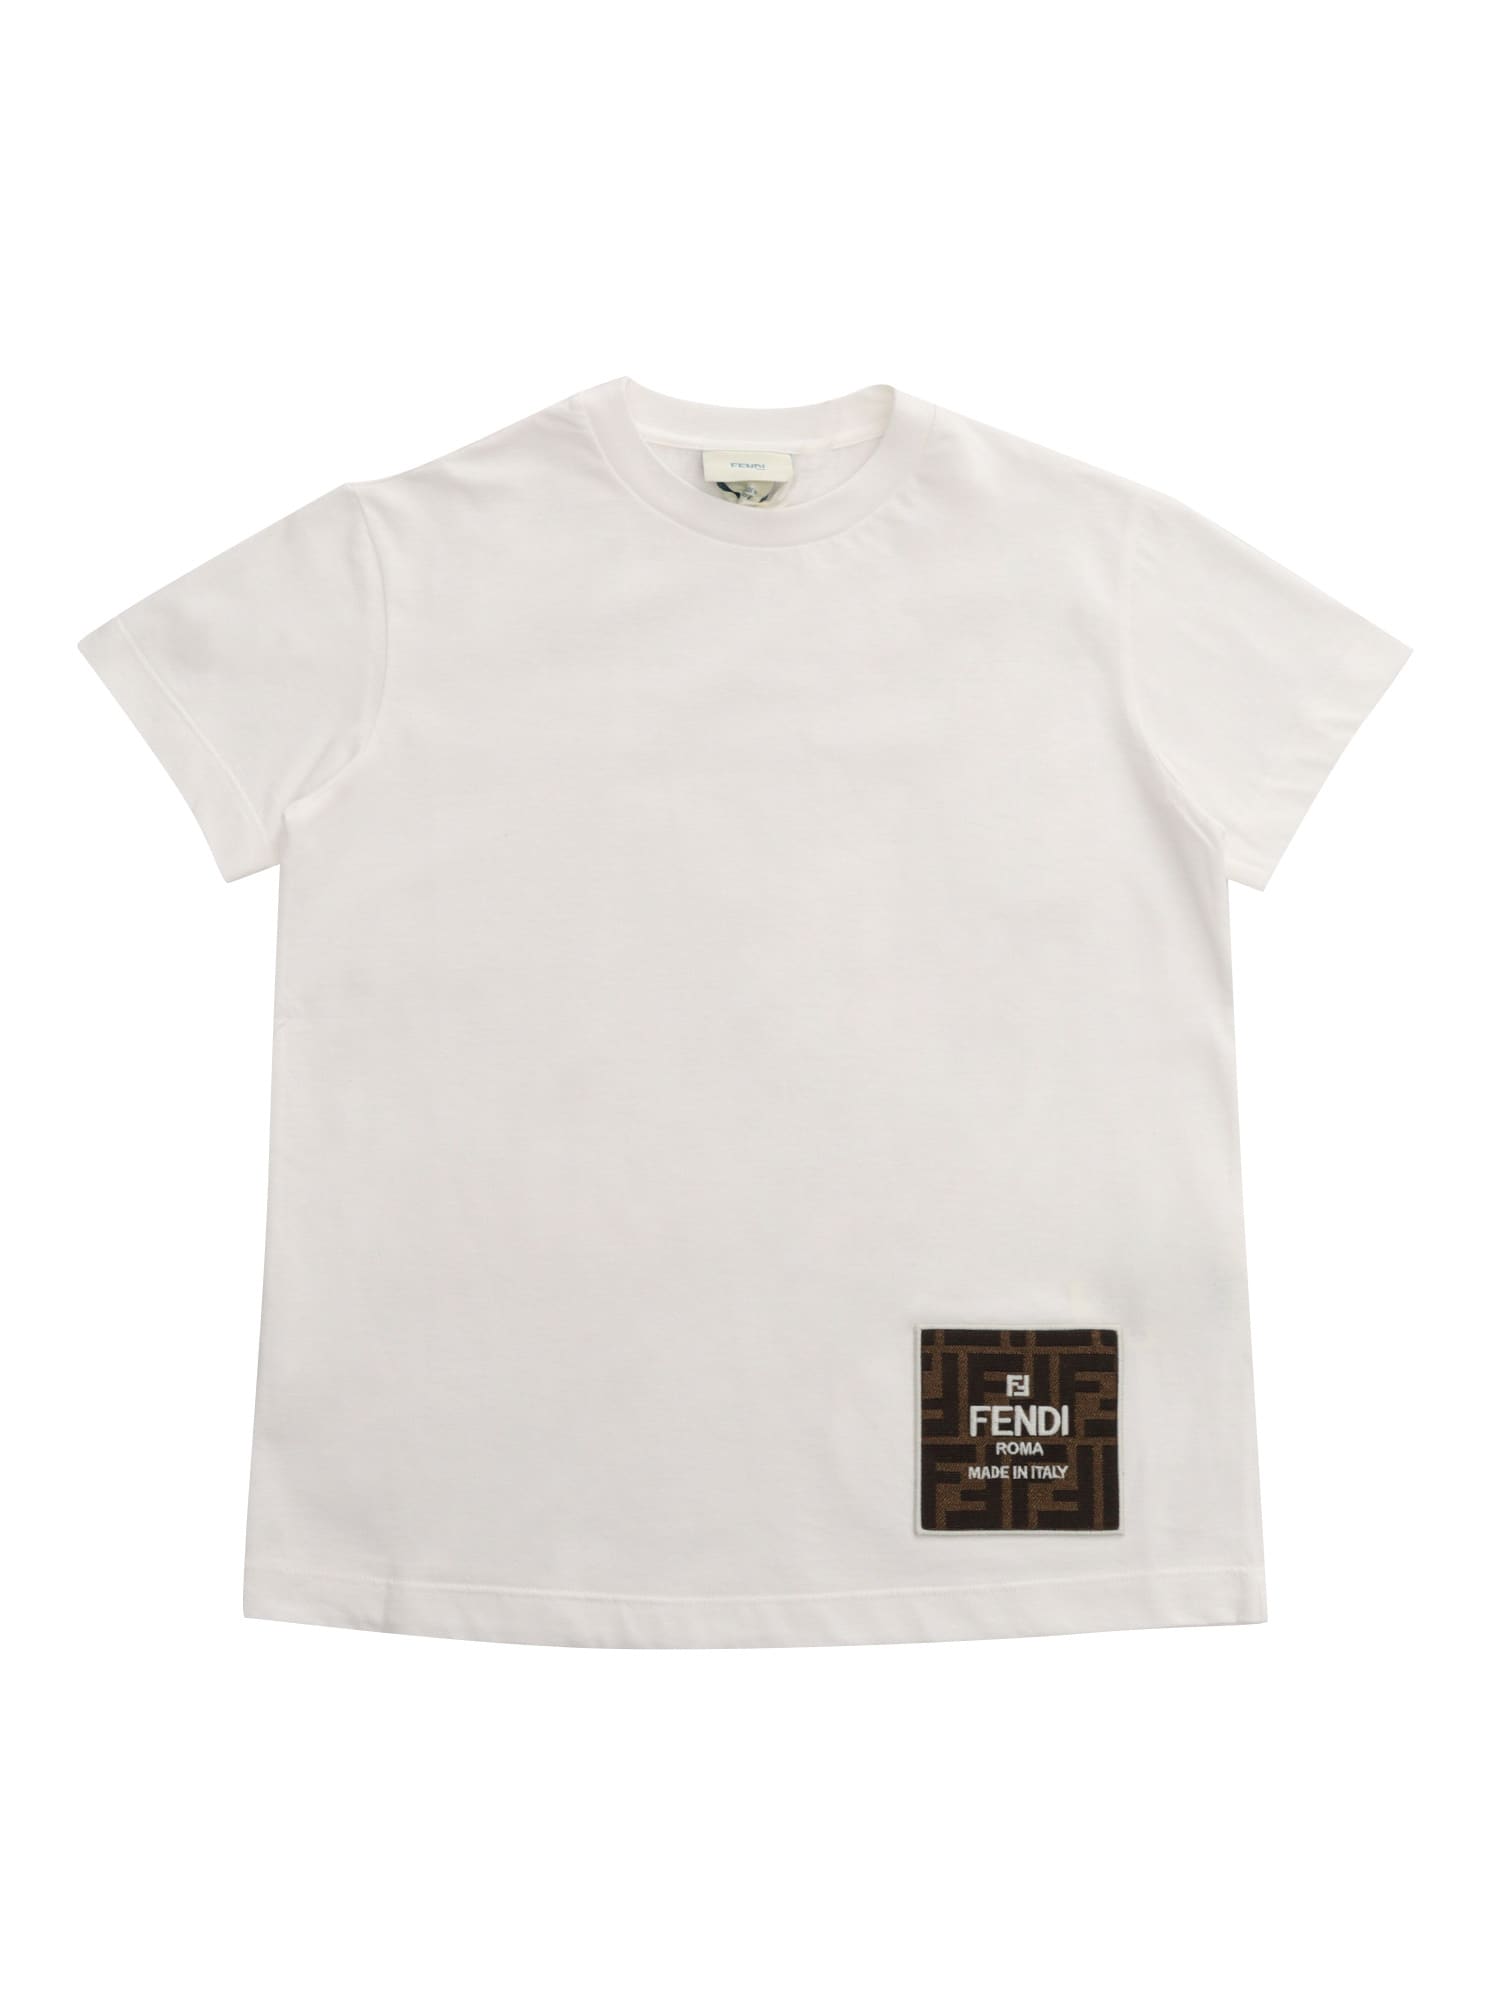 Fendi Kids' White  T-shirt